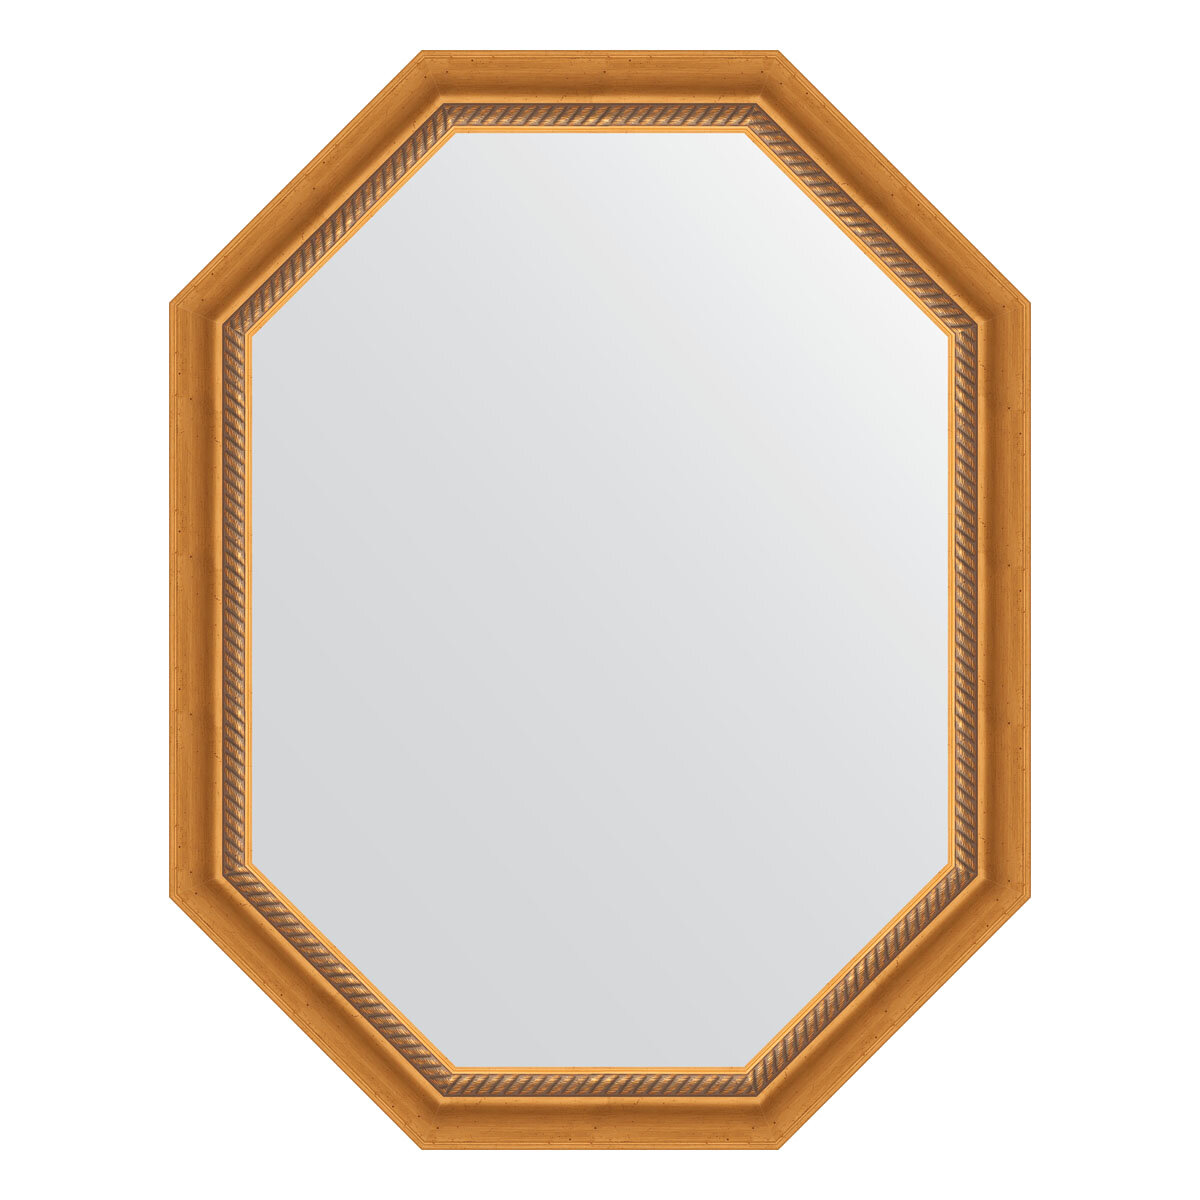 Зеркало настенное Polygon EVOFORM в багетной раме состаренное золото с плетением, 73х93 см, для гостиной, прихожей, спальни и ванной комнаты, BY 7108